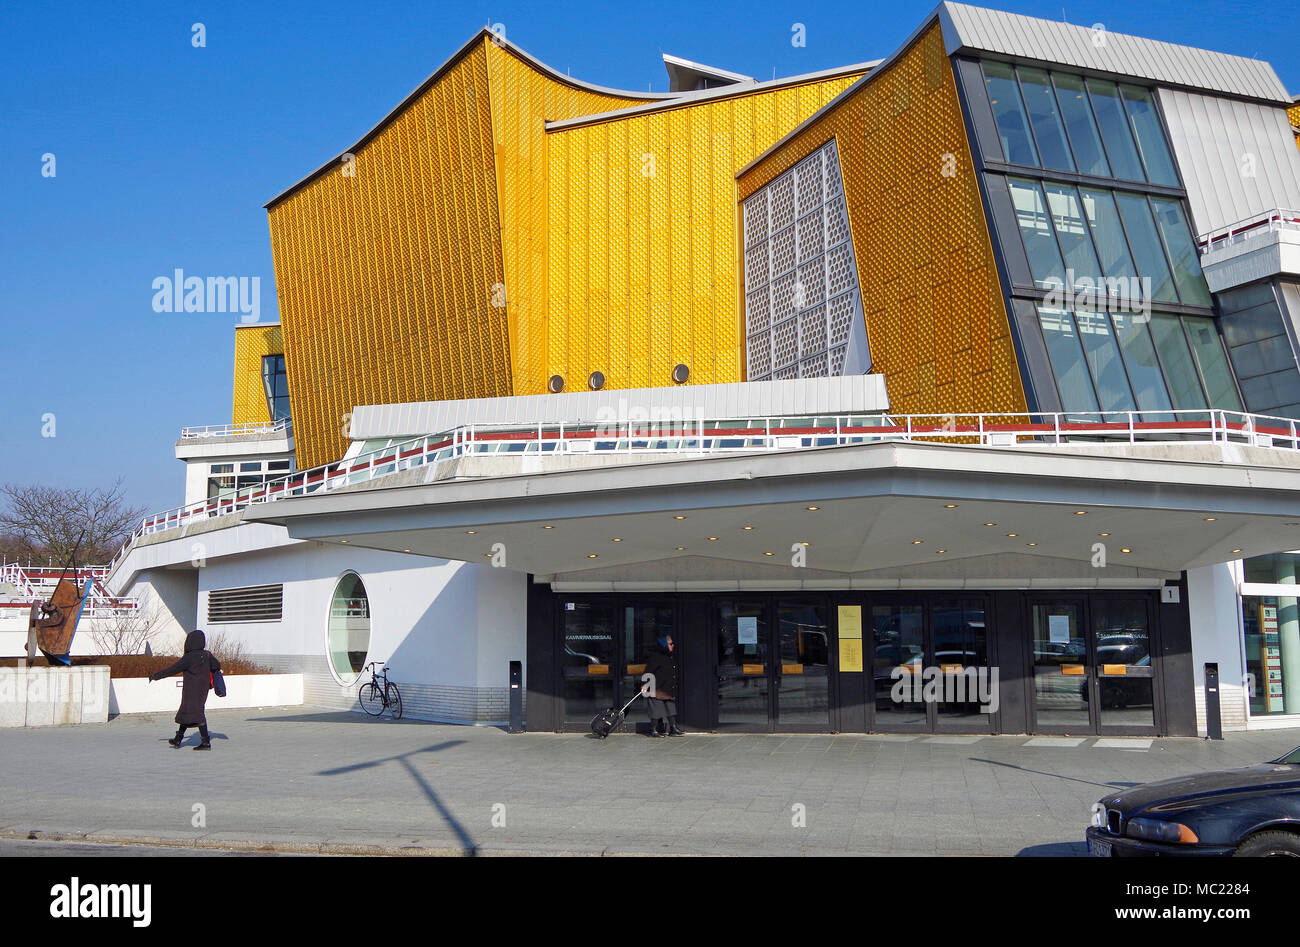 La Berliner Philharmonie concert hall, sede dell'Orchestra Filarmonica di Berlino, architetto Hans Scharoun, ingresso alla camera music hall Foto Stock